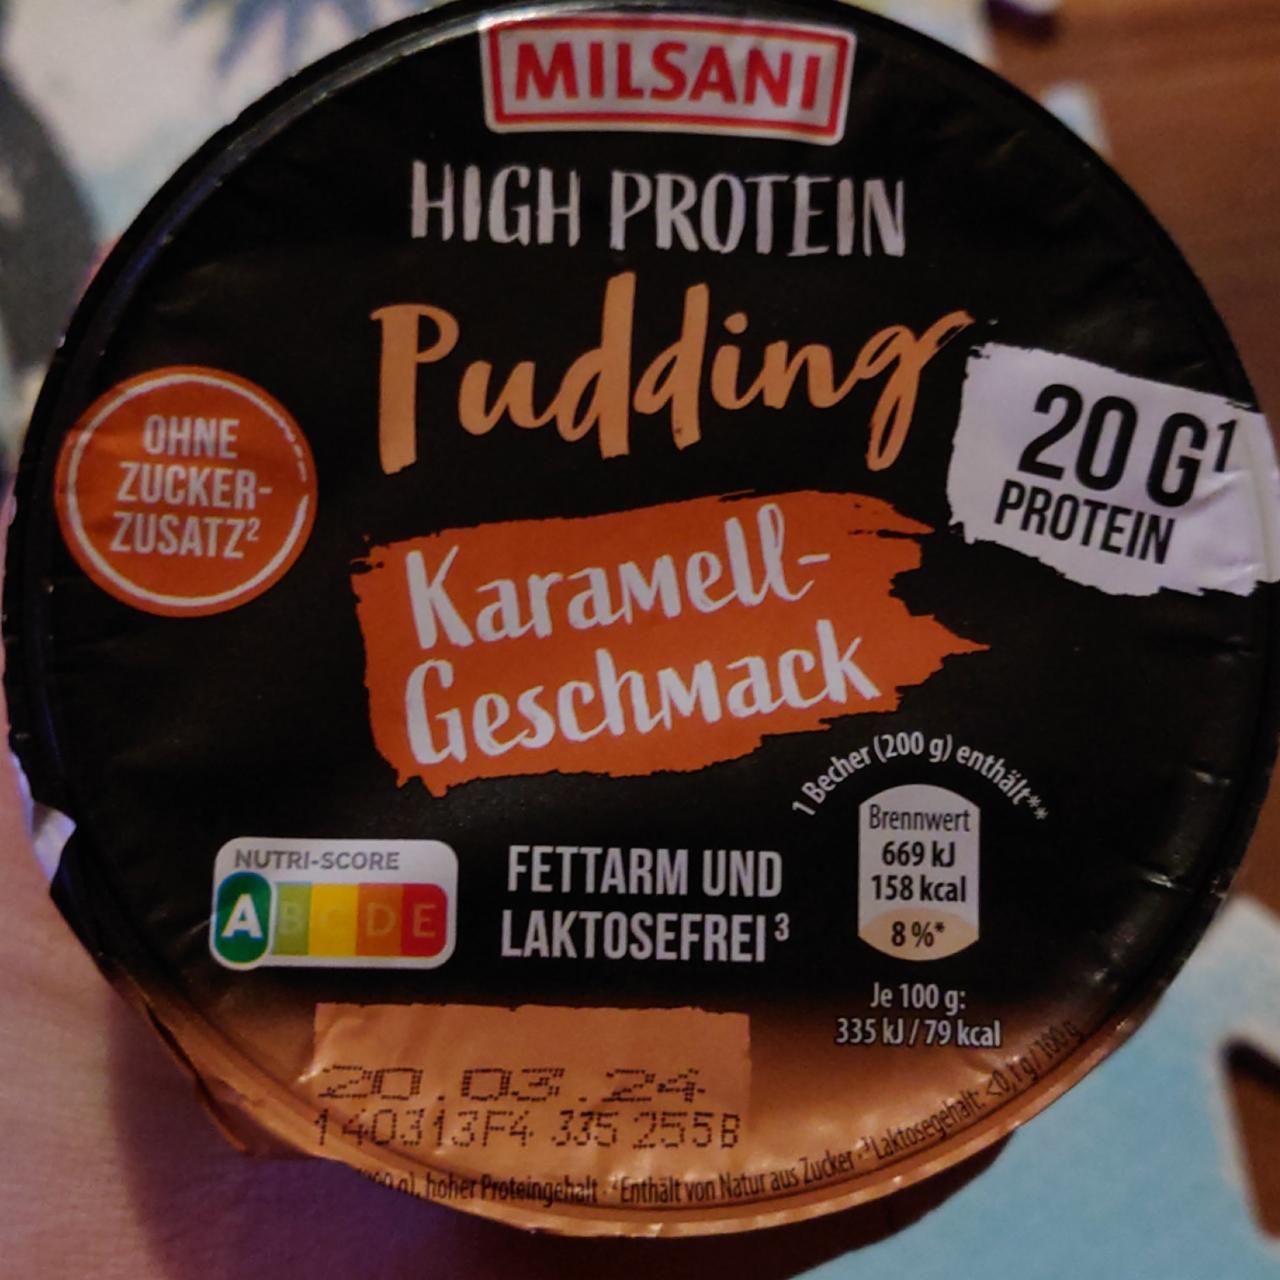 Fotografie - High protein Karamell-Geschmack Milsani